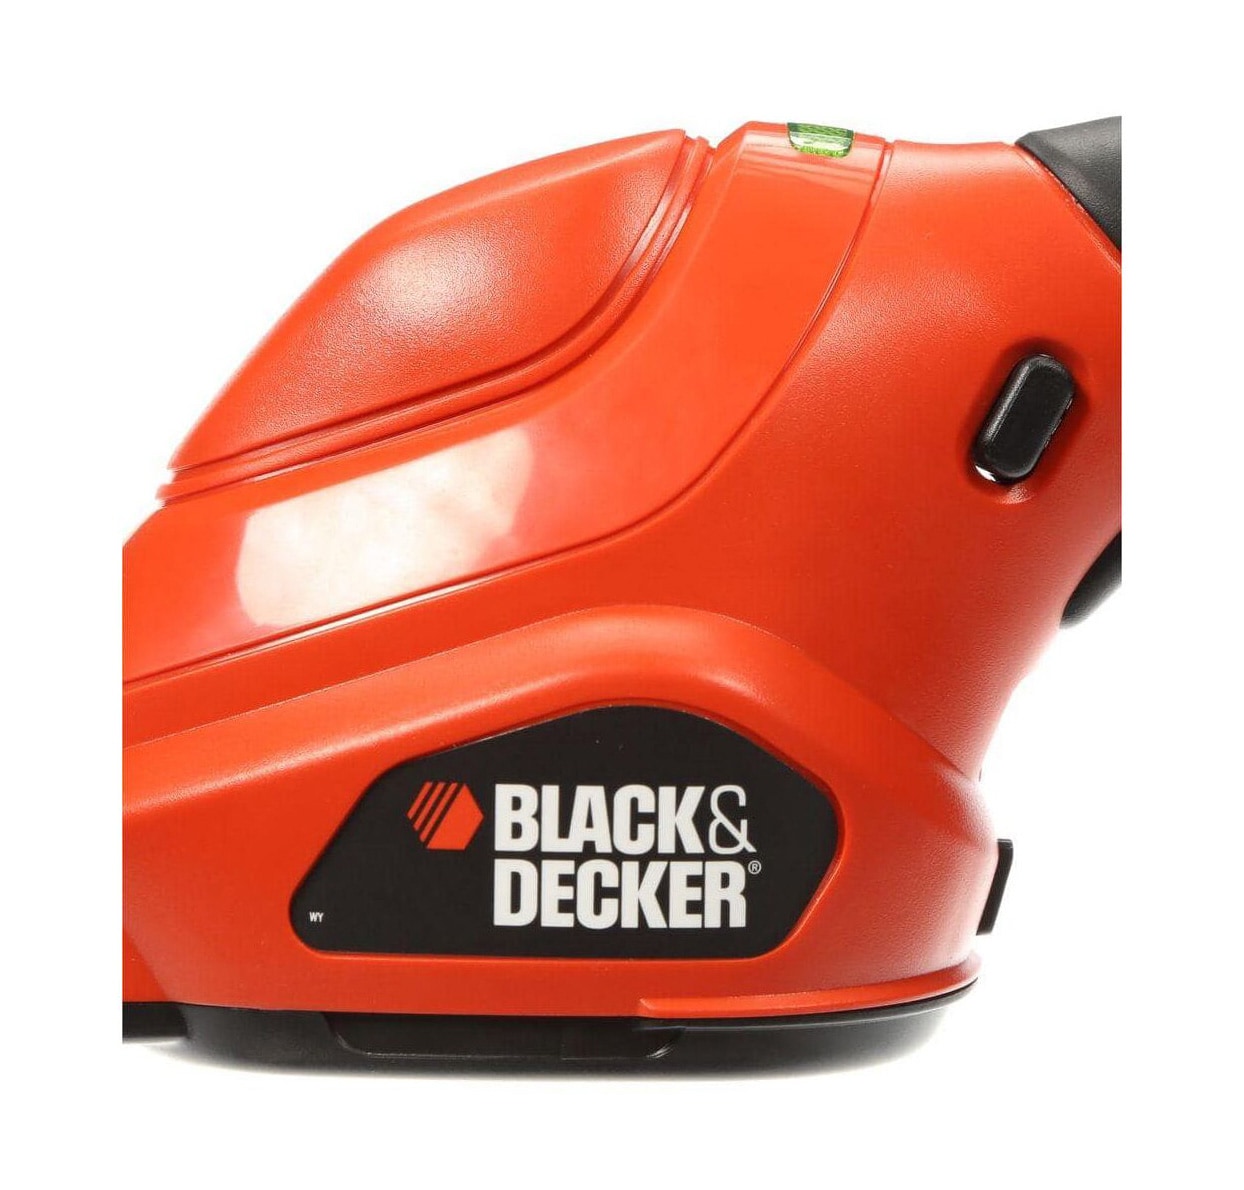 Black & Decker BEHT200 18 Hedge Trimmer, GLS35 Garden Shear